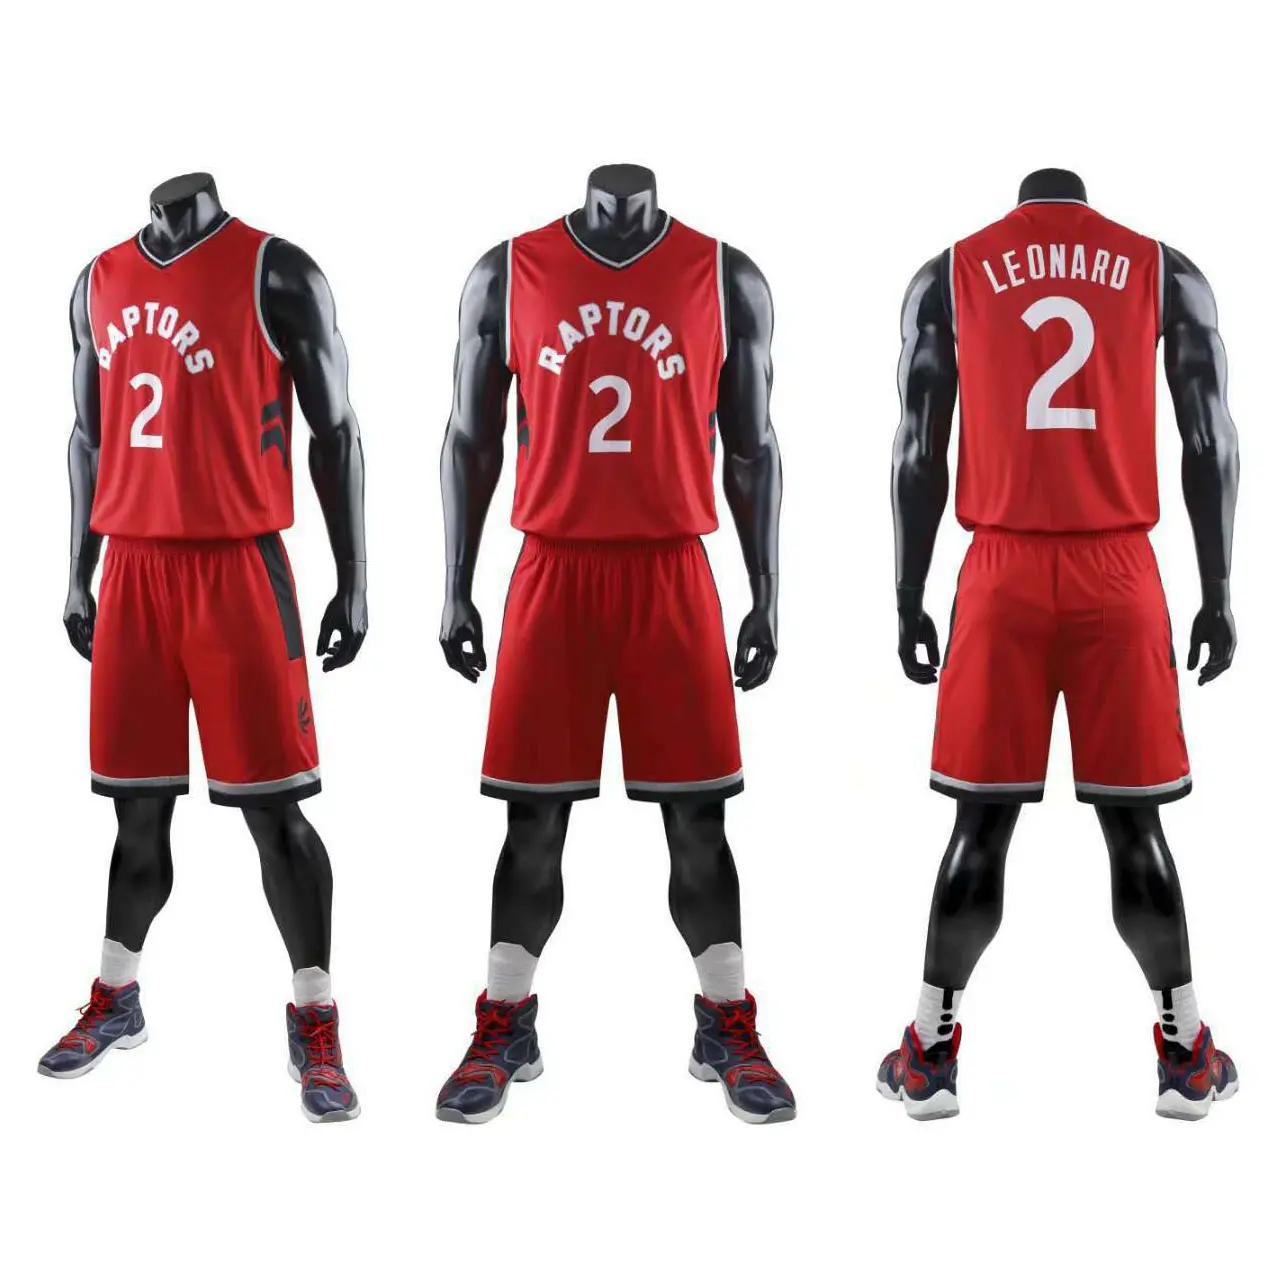 Nouveaux vêtements de basket-ball en gros bon marché Derniers vêtements de basket-ball Vêtements de basket-ball personnalisés